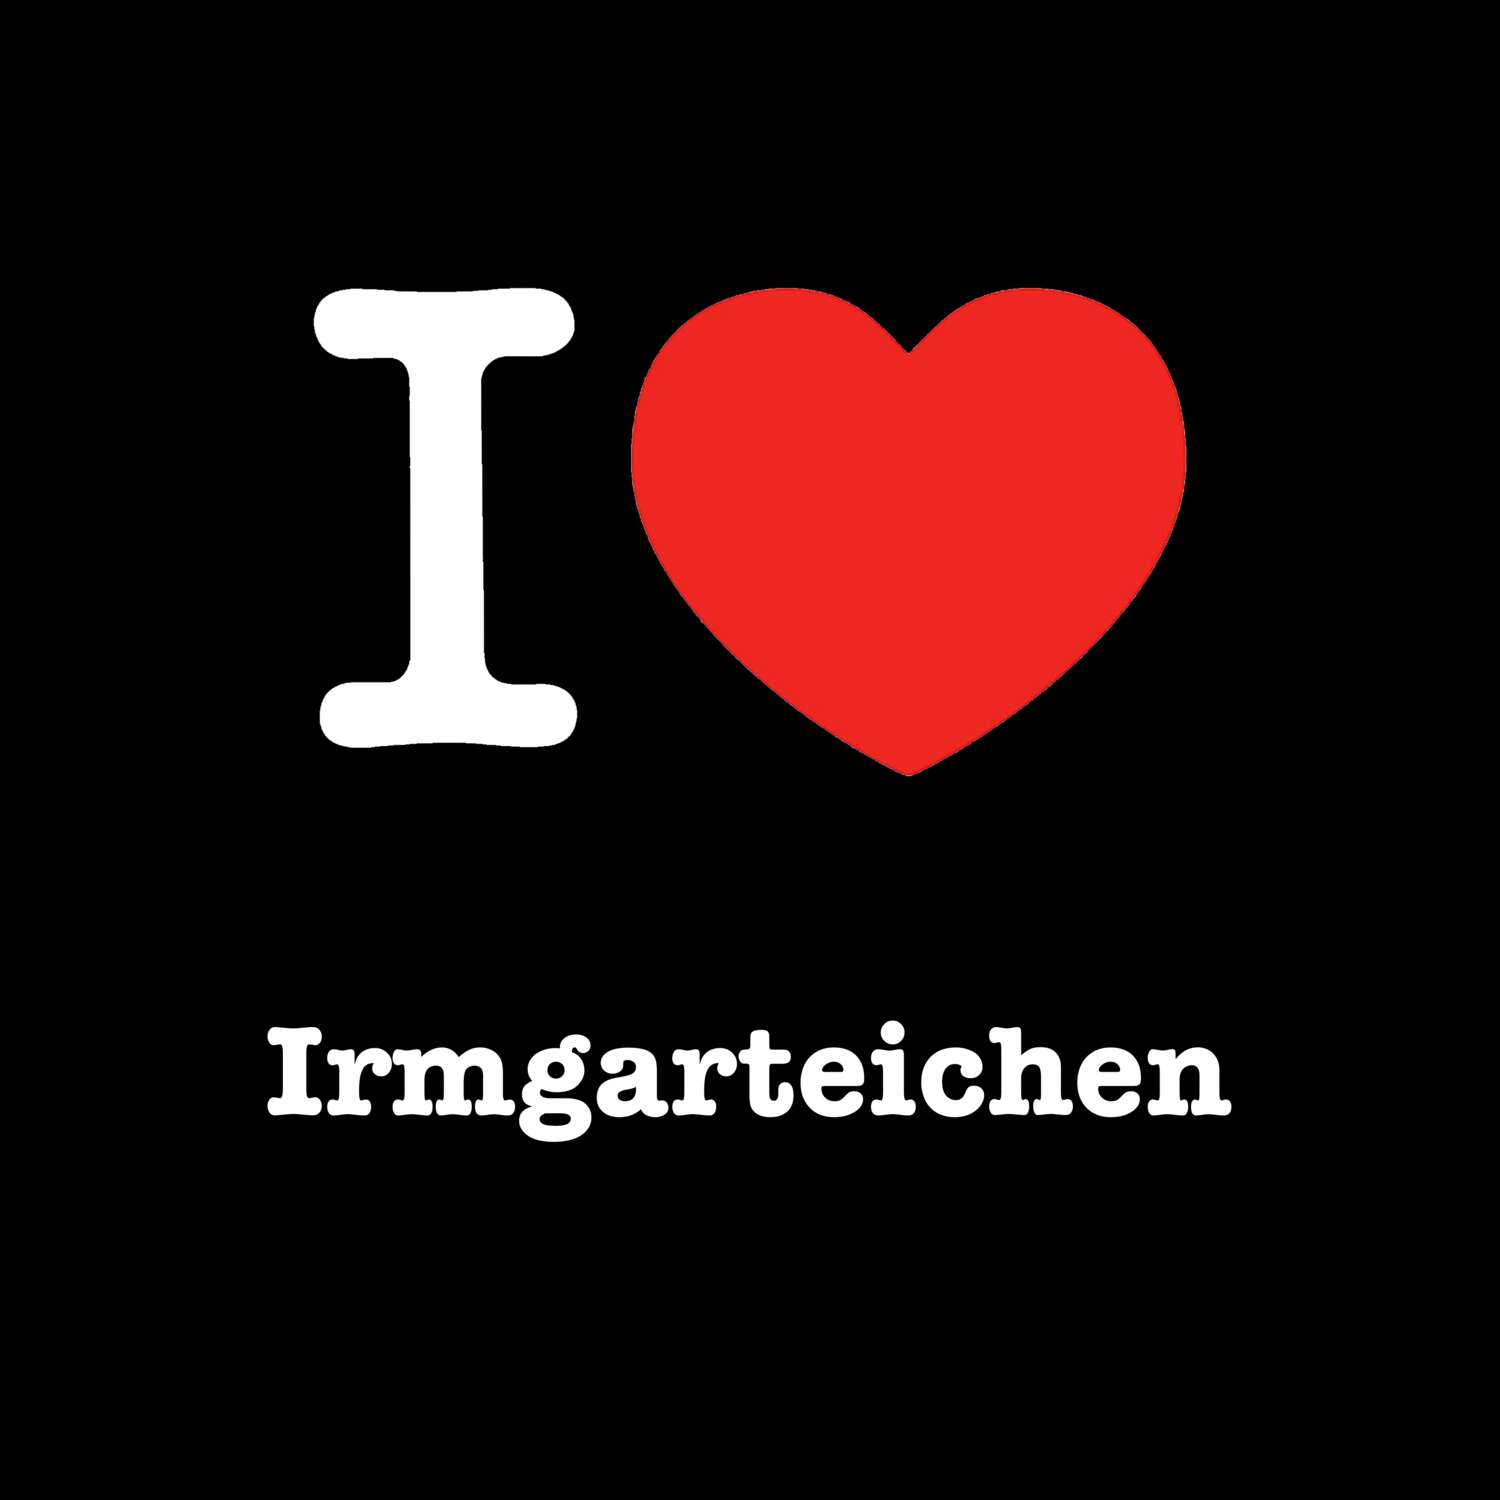 Irmgarteichen T-Shirt »I love«